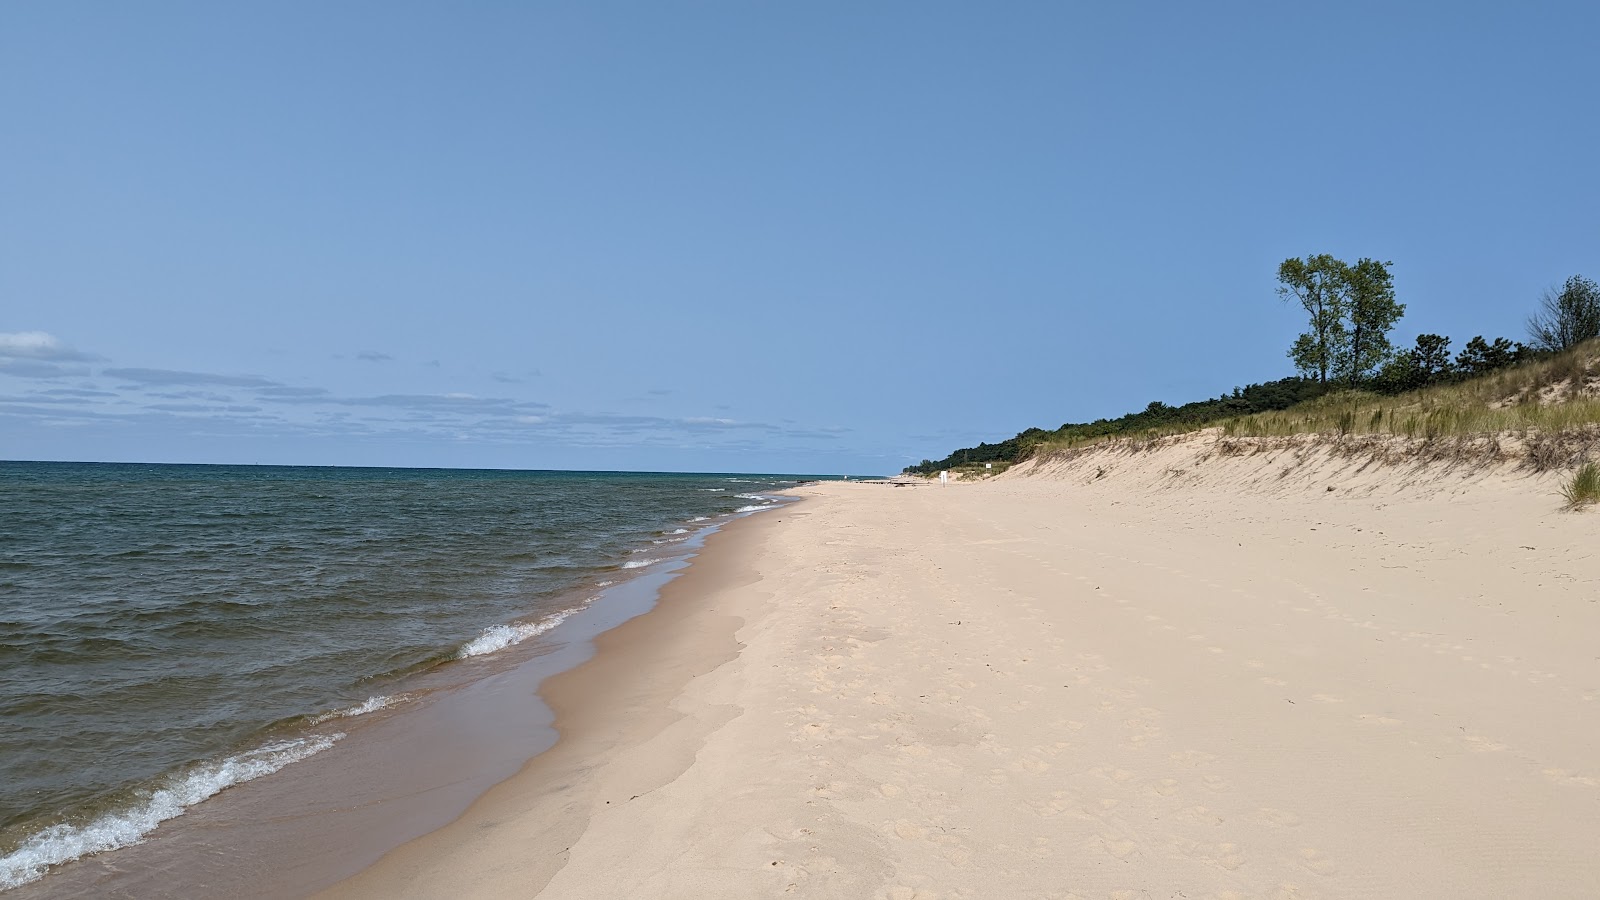 Fotografie cu Benona Township Beach cu o suprafață de nisip fin strălucitor